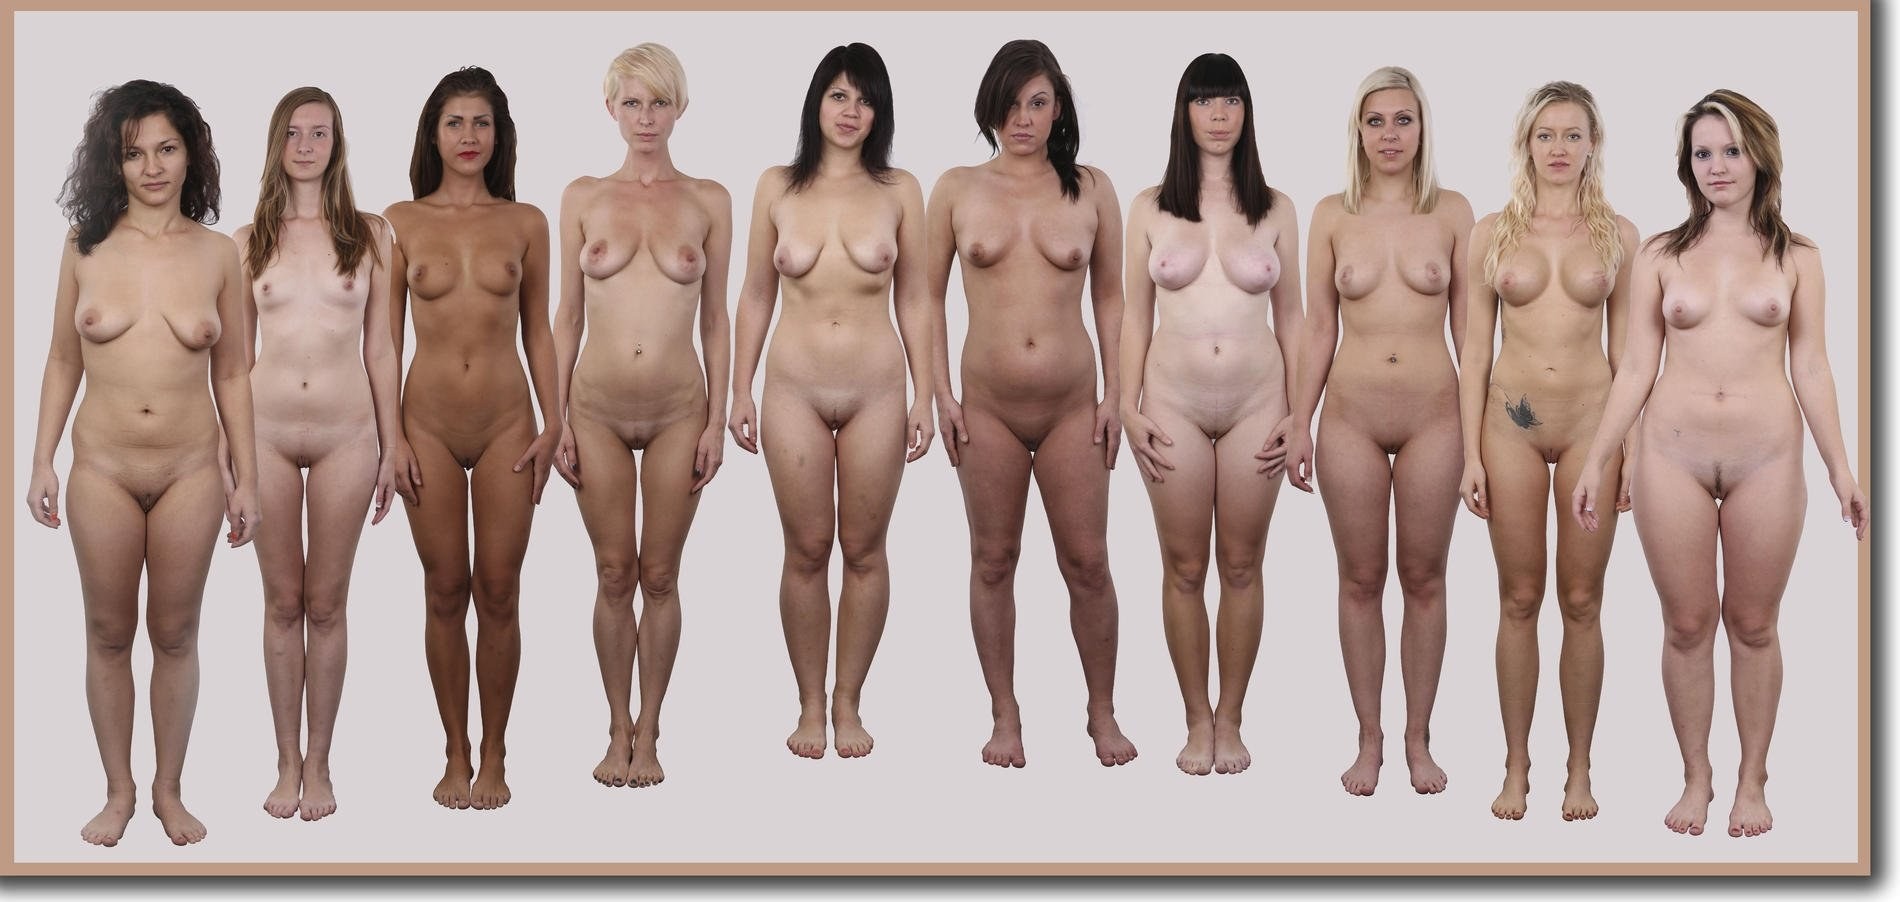 Фото эротика бесплатно. Смотреть голые секс фото бесплатные онлайн. XXX и НЮ фото девушек и женщин.